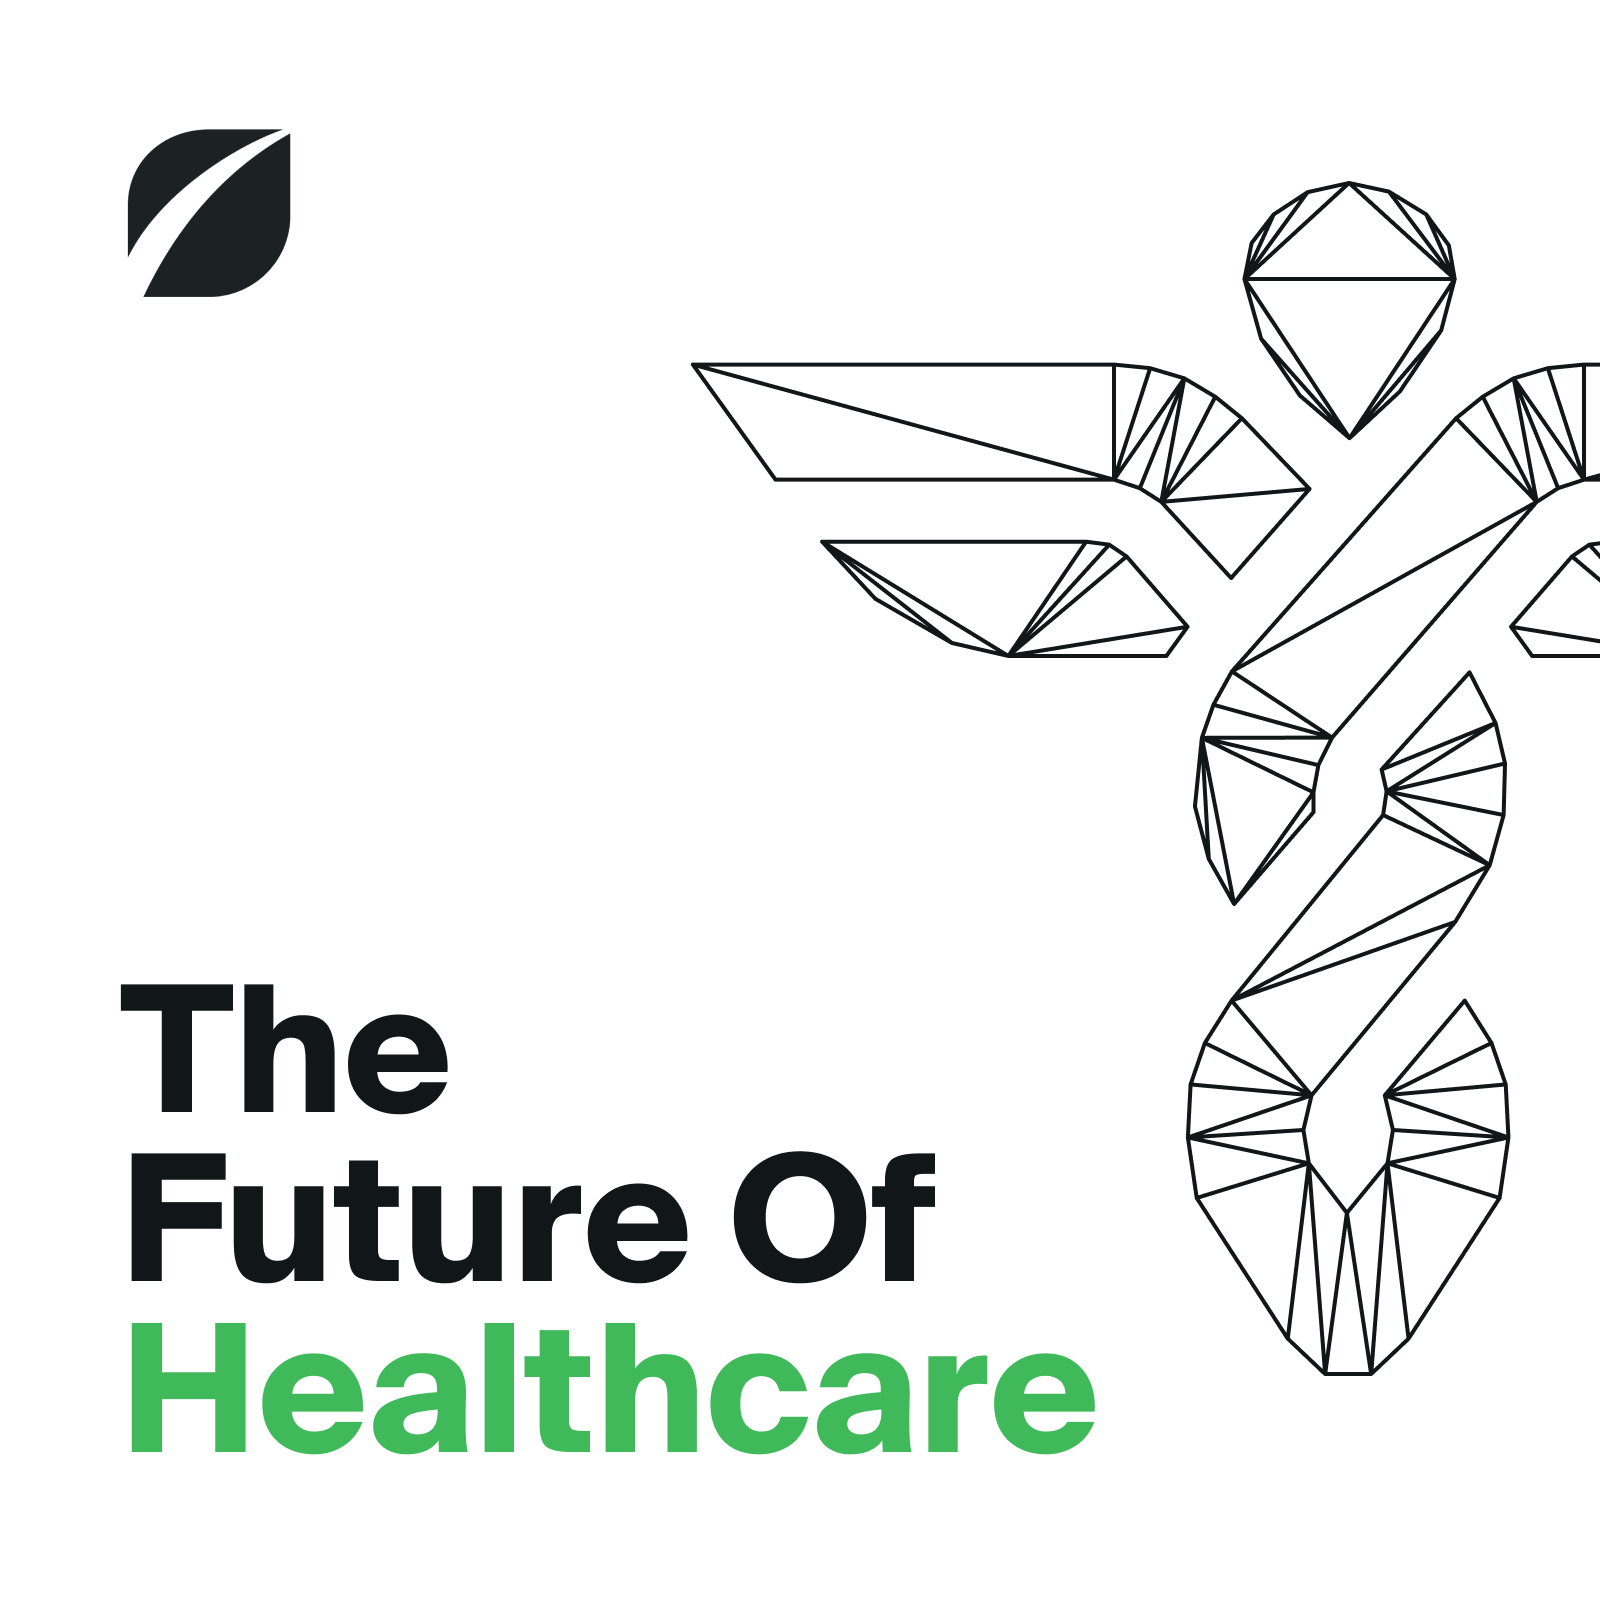 The Future Of Healthcare